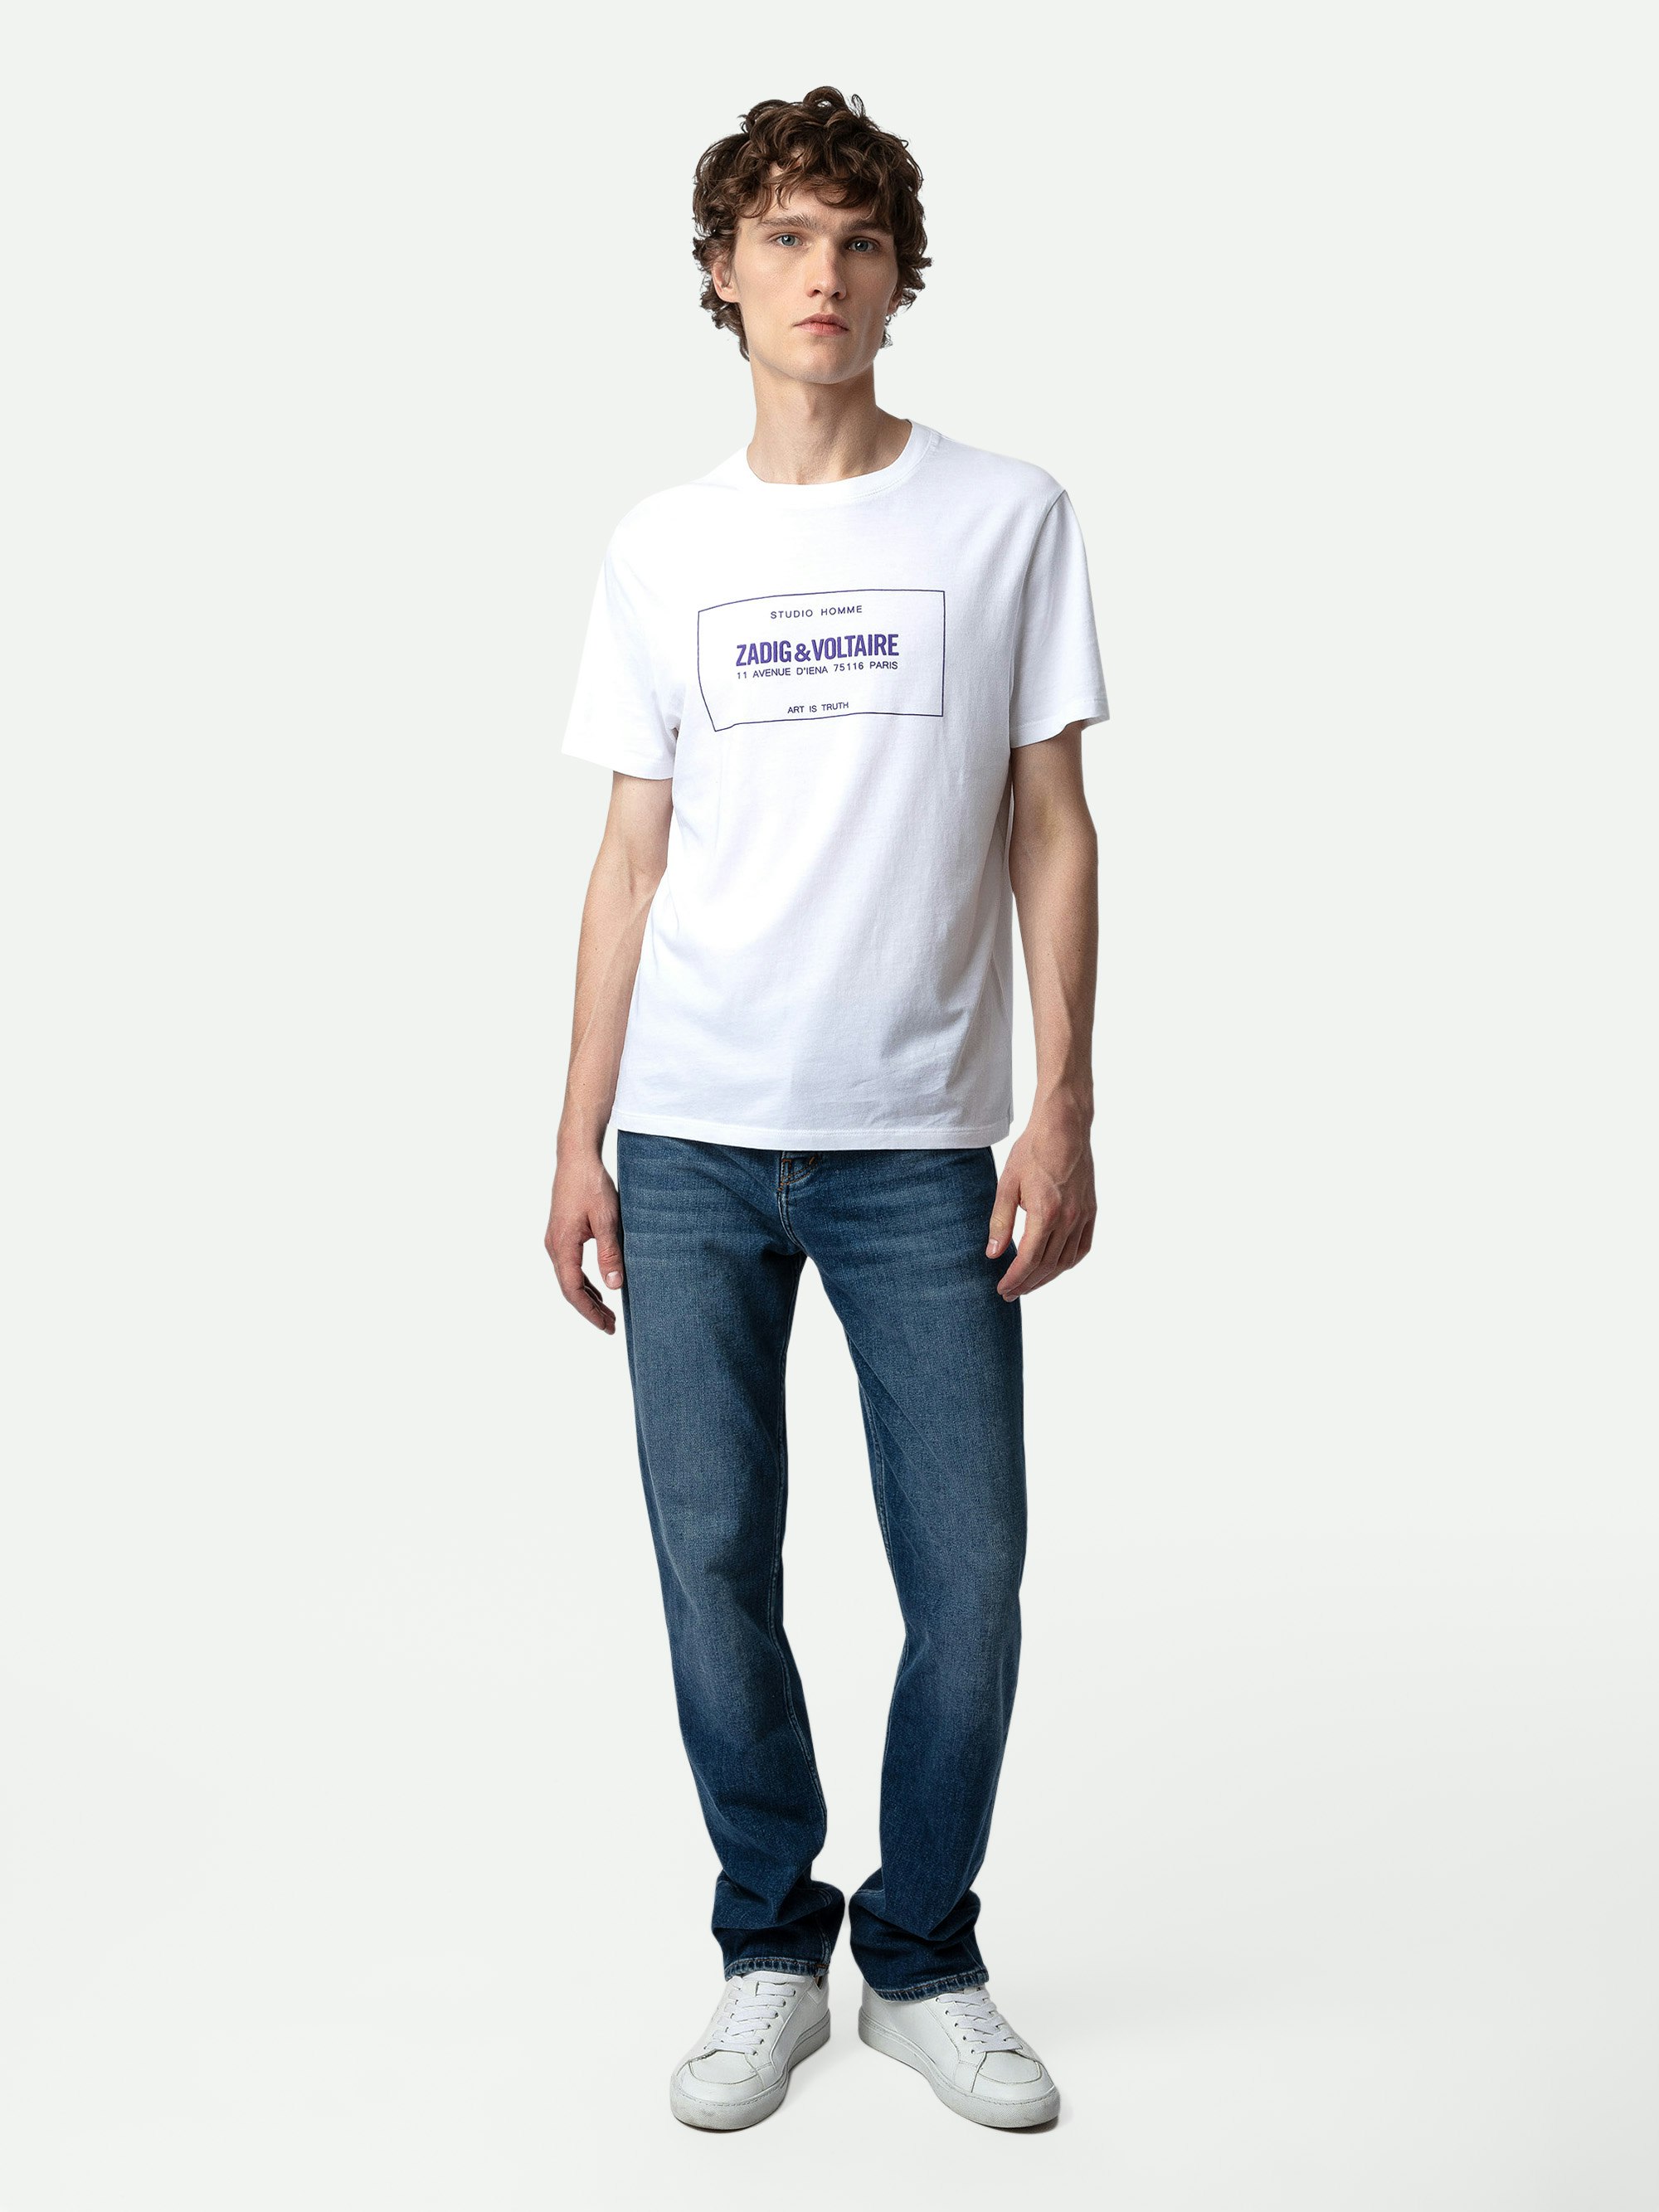 T-shirt Ted Blason - T-shirt en coton à col rond, manches courtes et blason Studio.